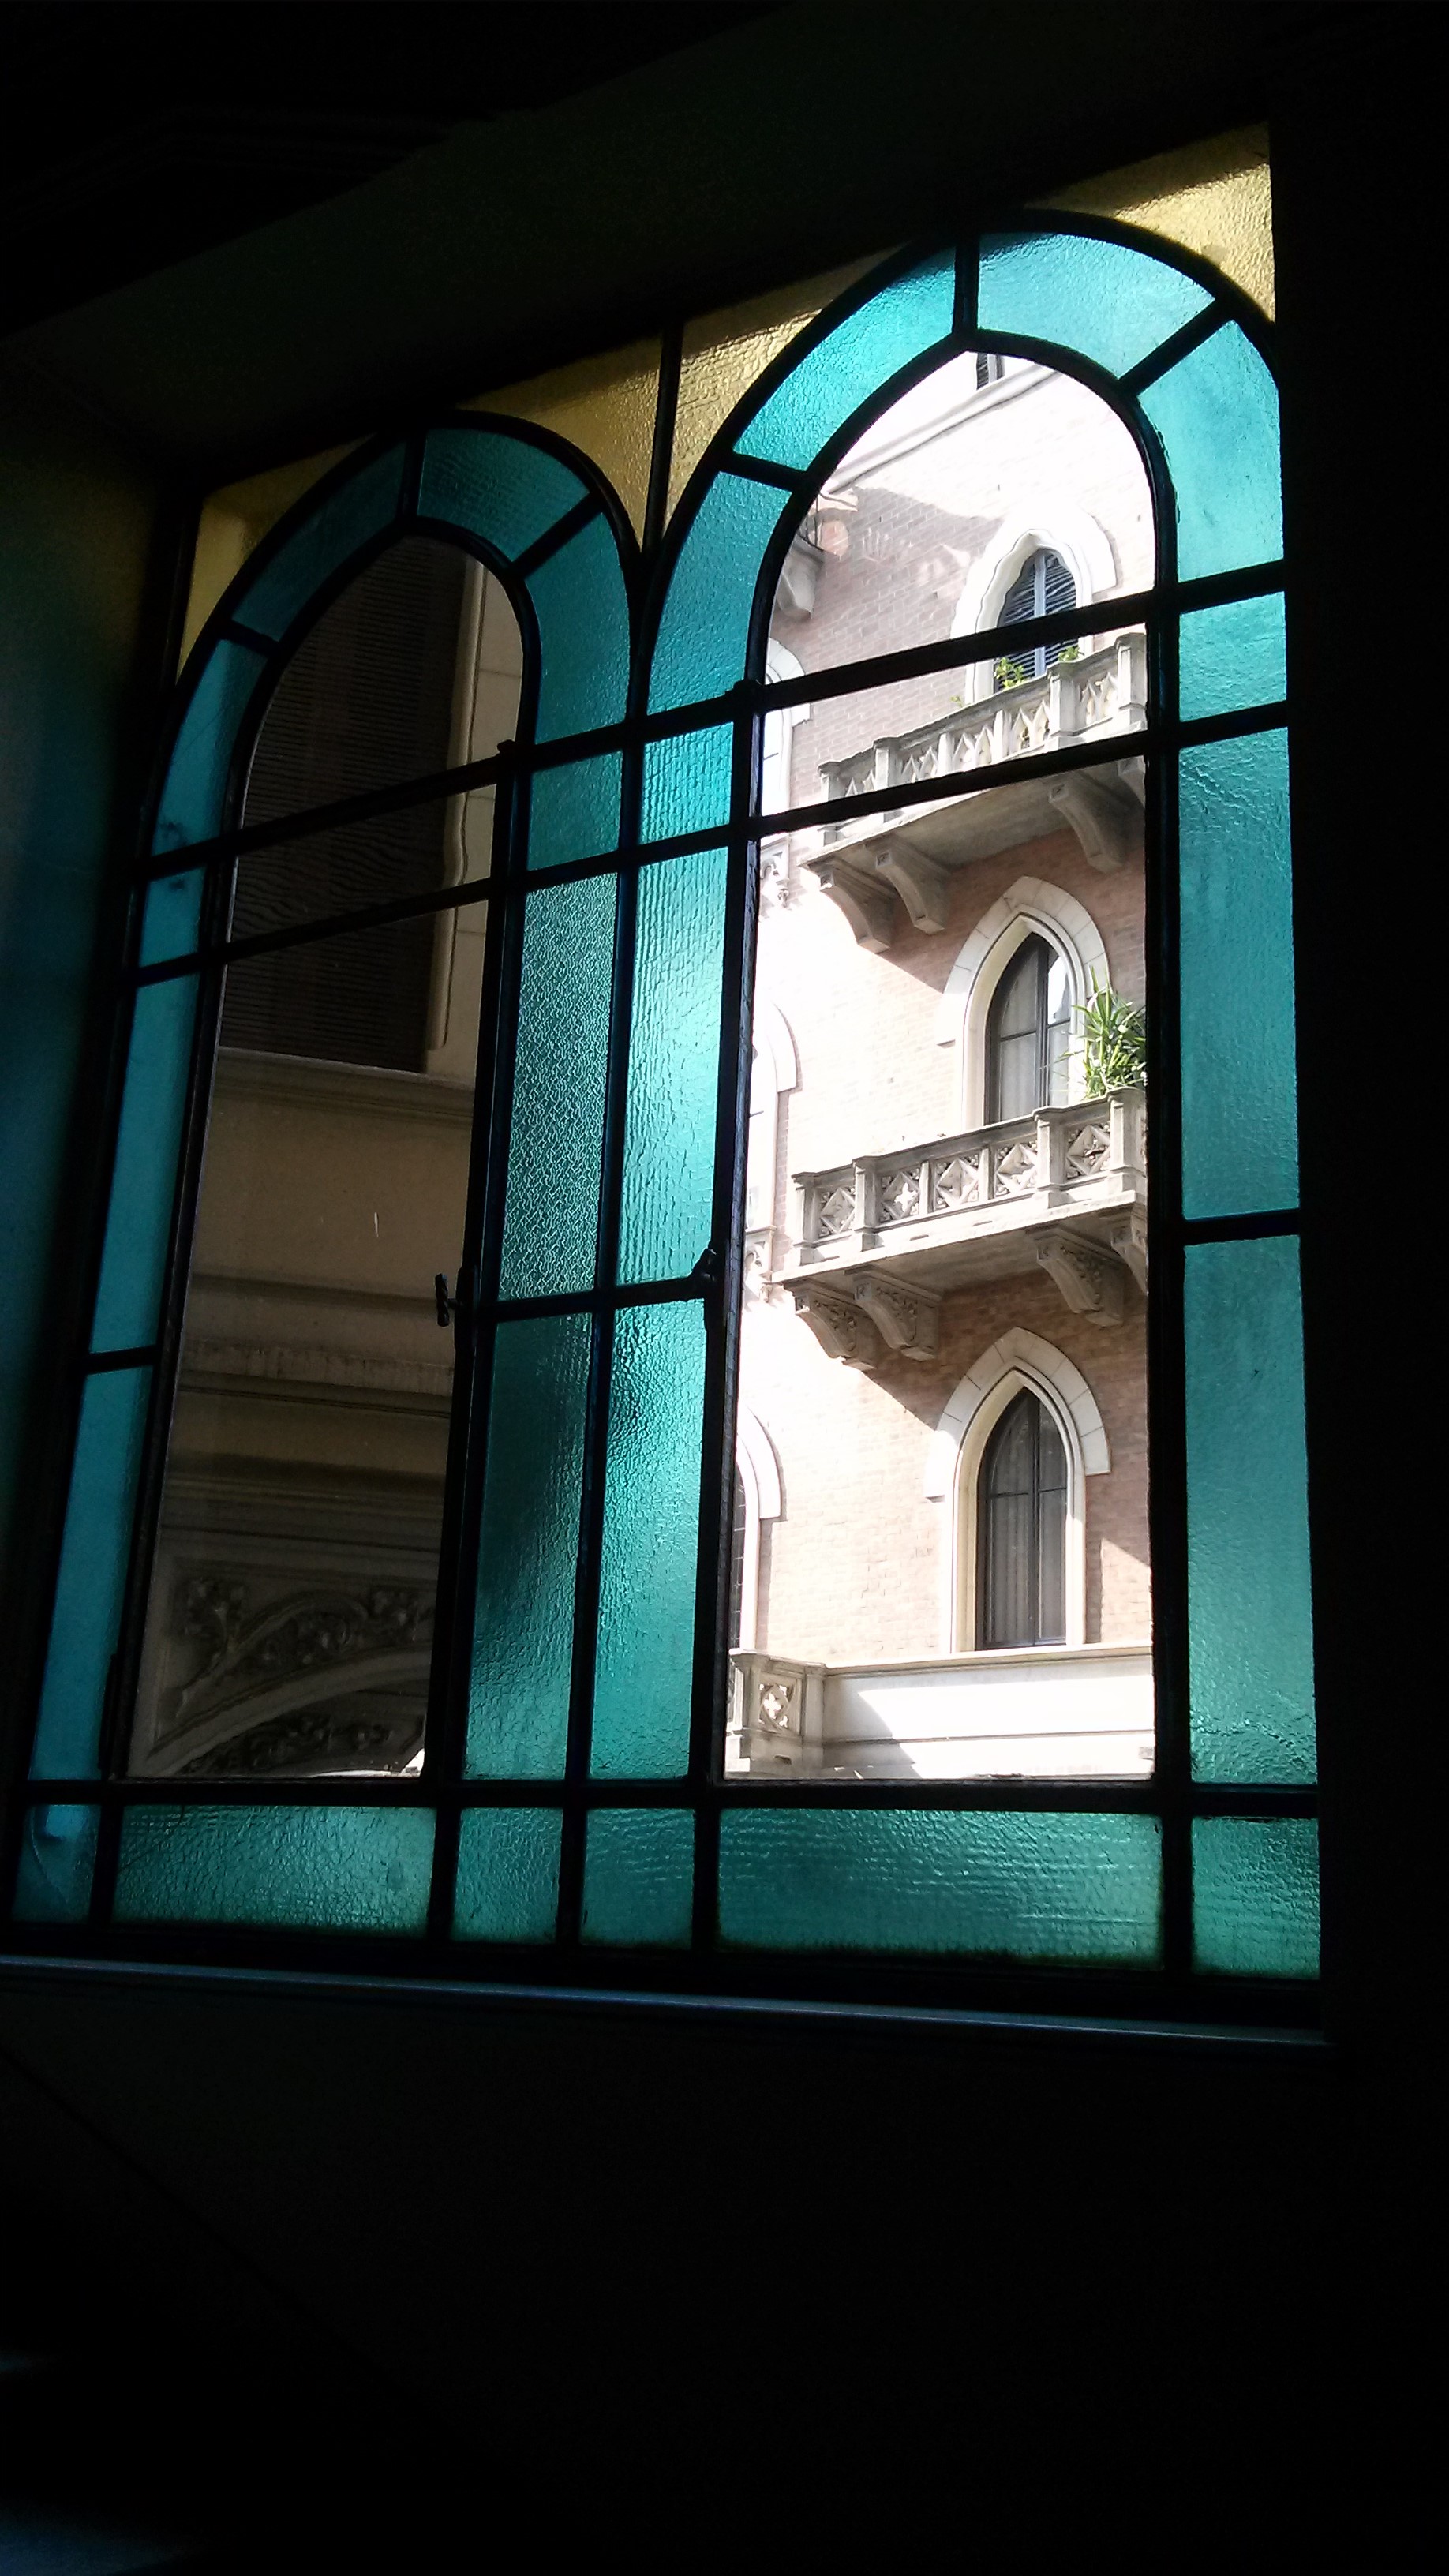 Le vetrate colorate dei portoni: un dettaglio nascosto, tutto torinese.